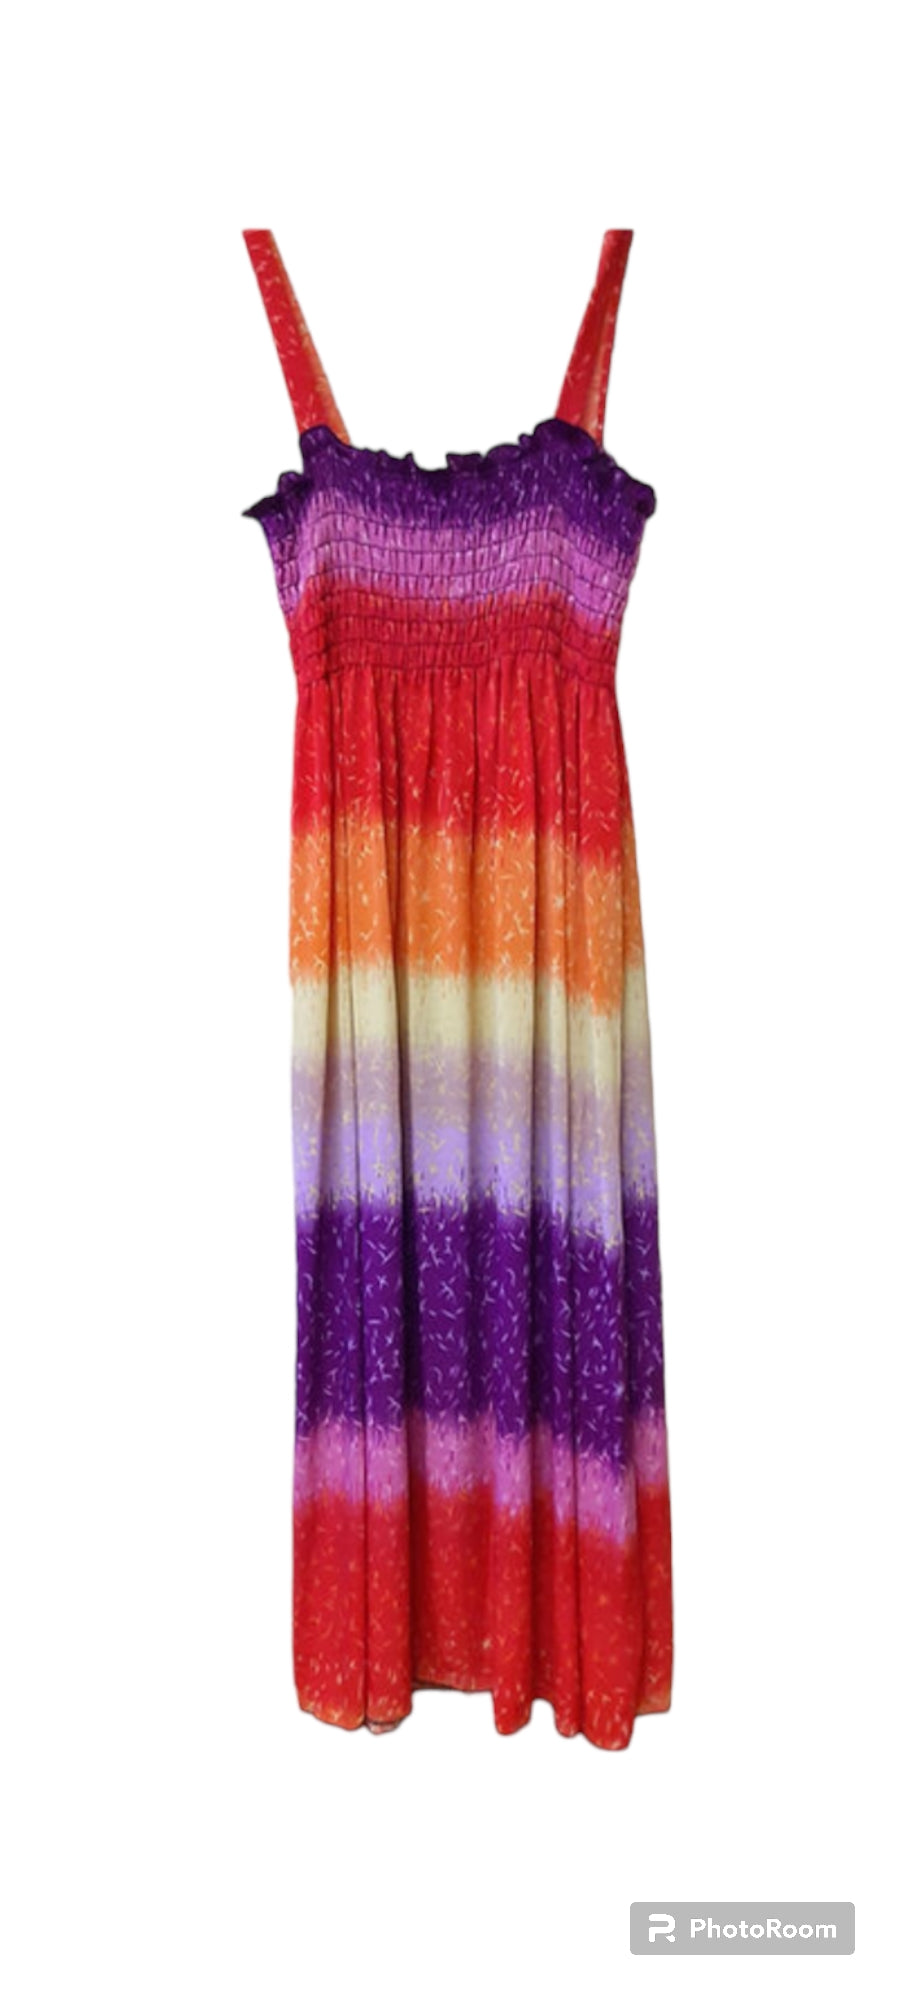 Multicolored dress